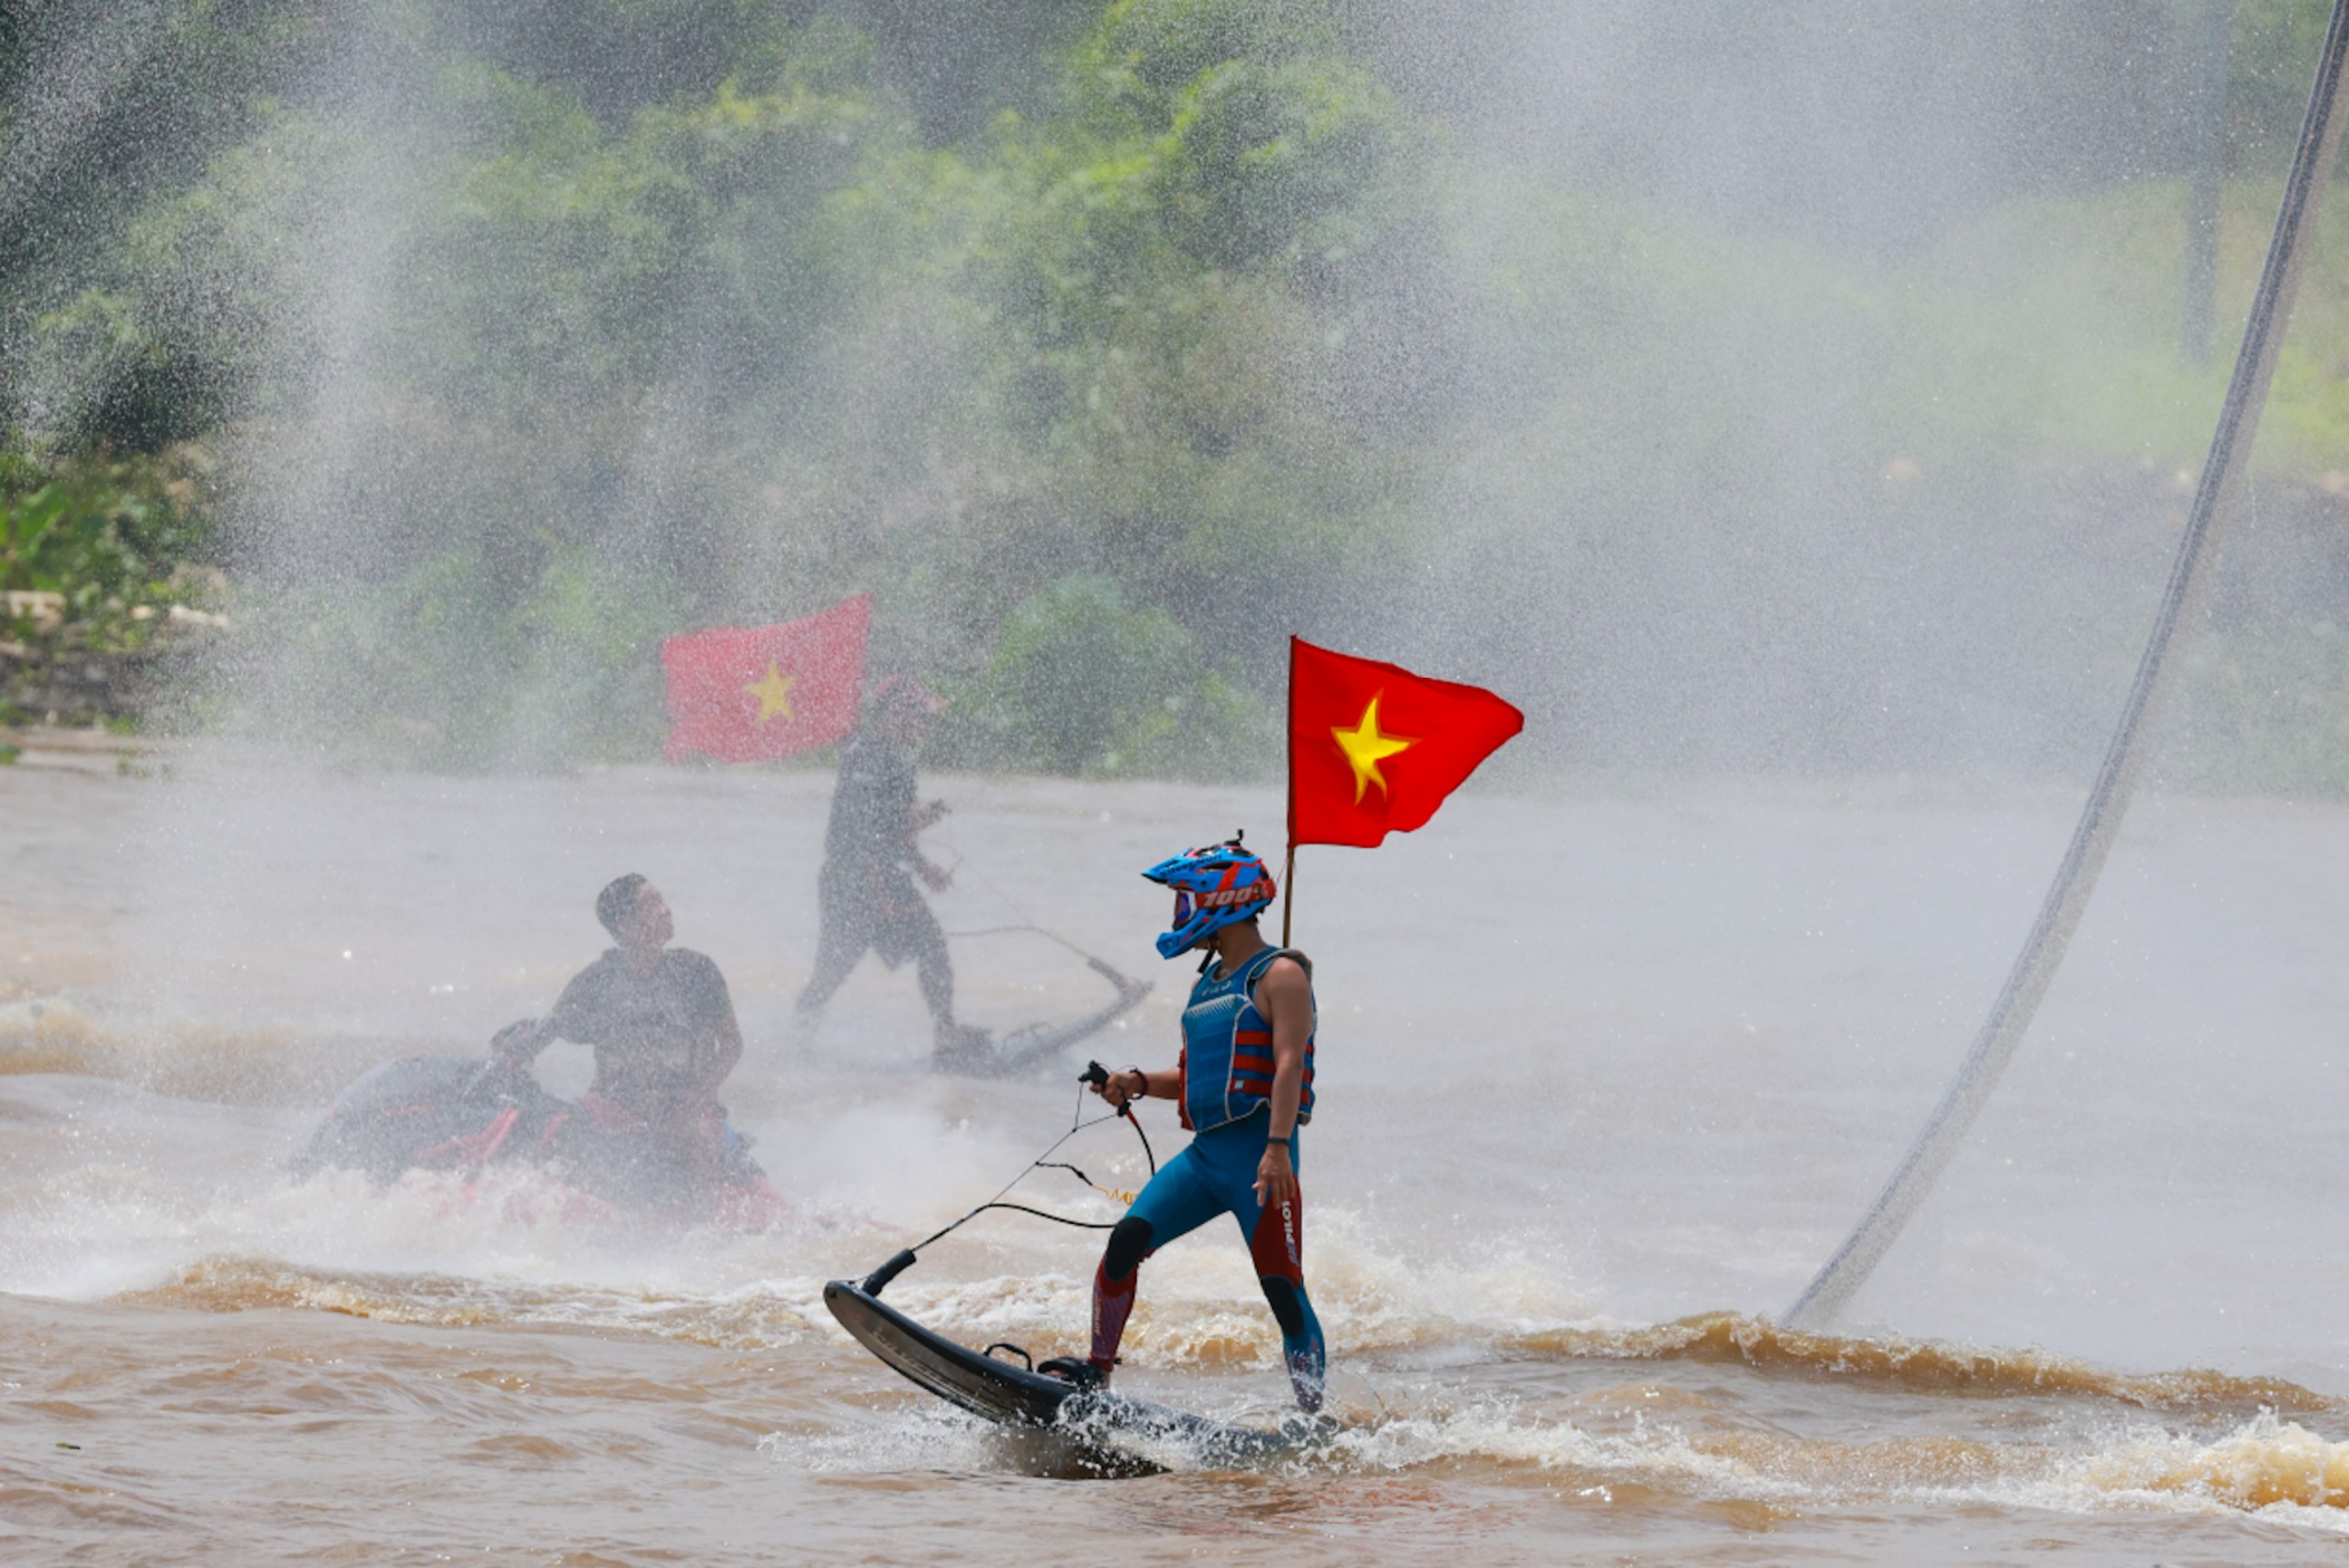 Ván phản lực khuấy động sông Sài Gòn - 4